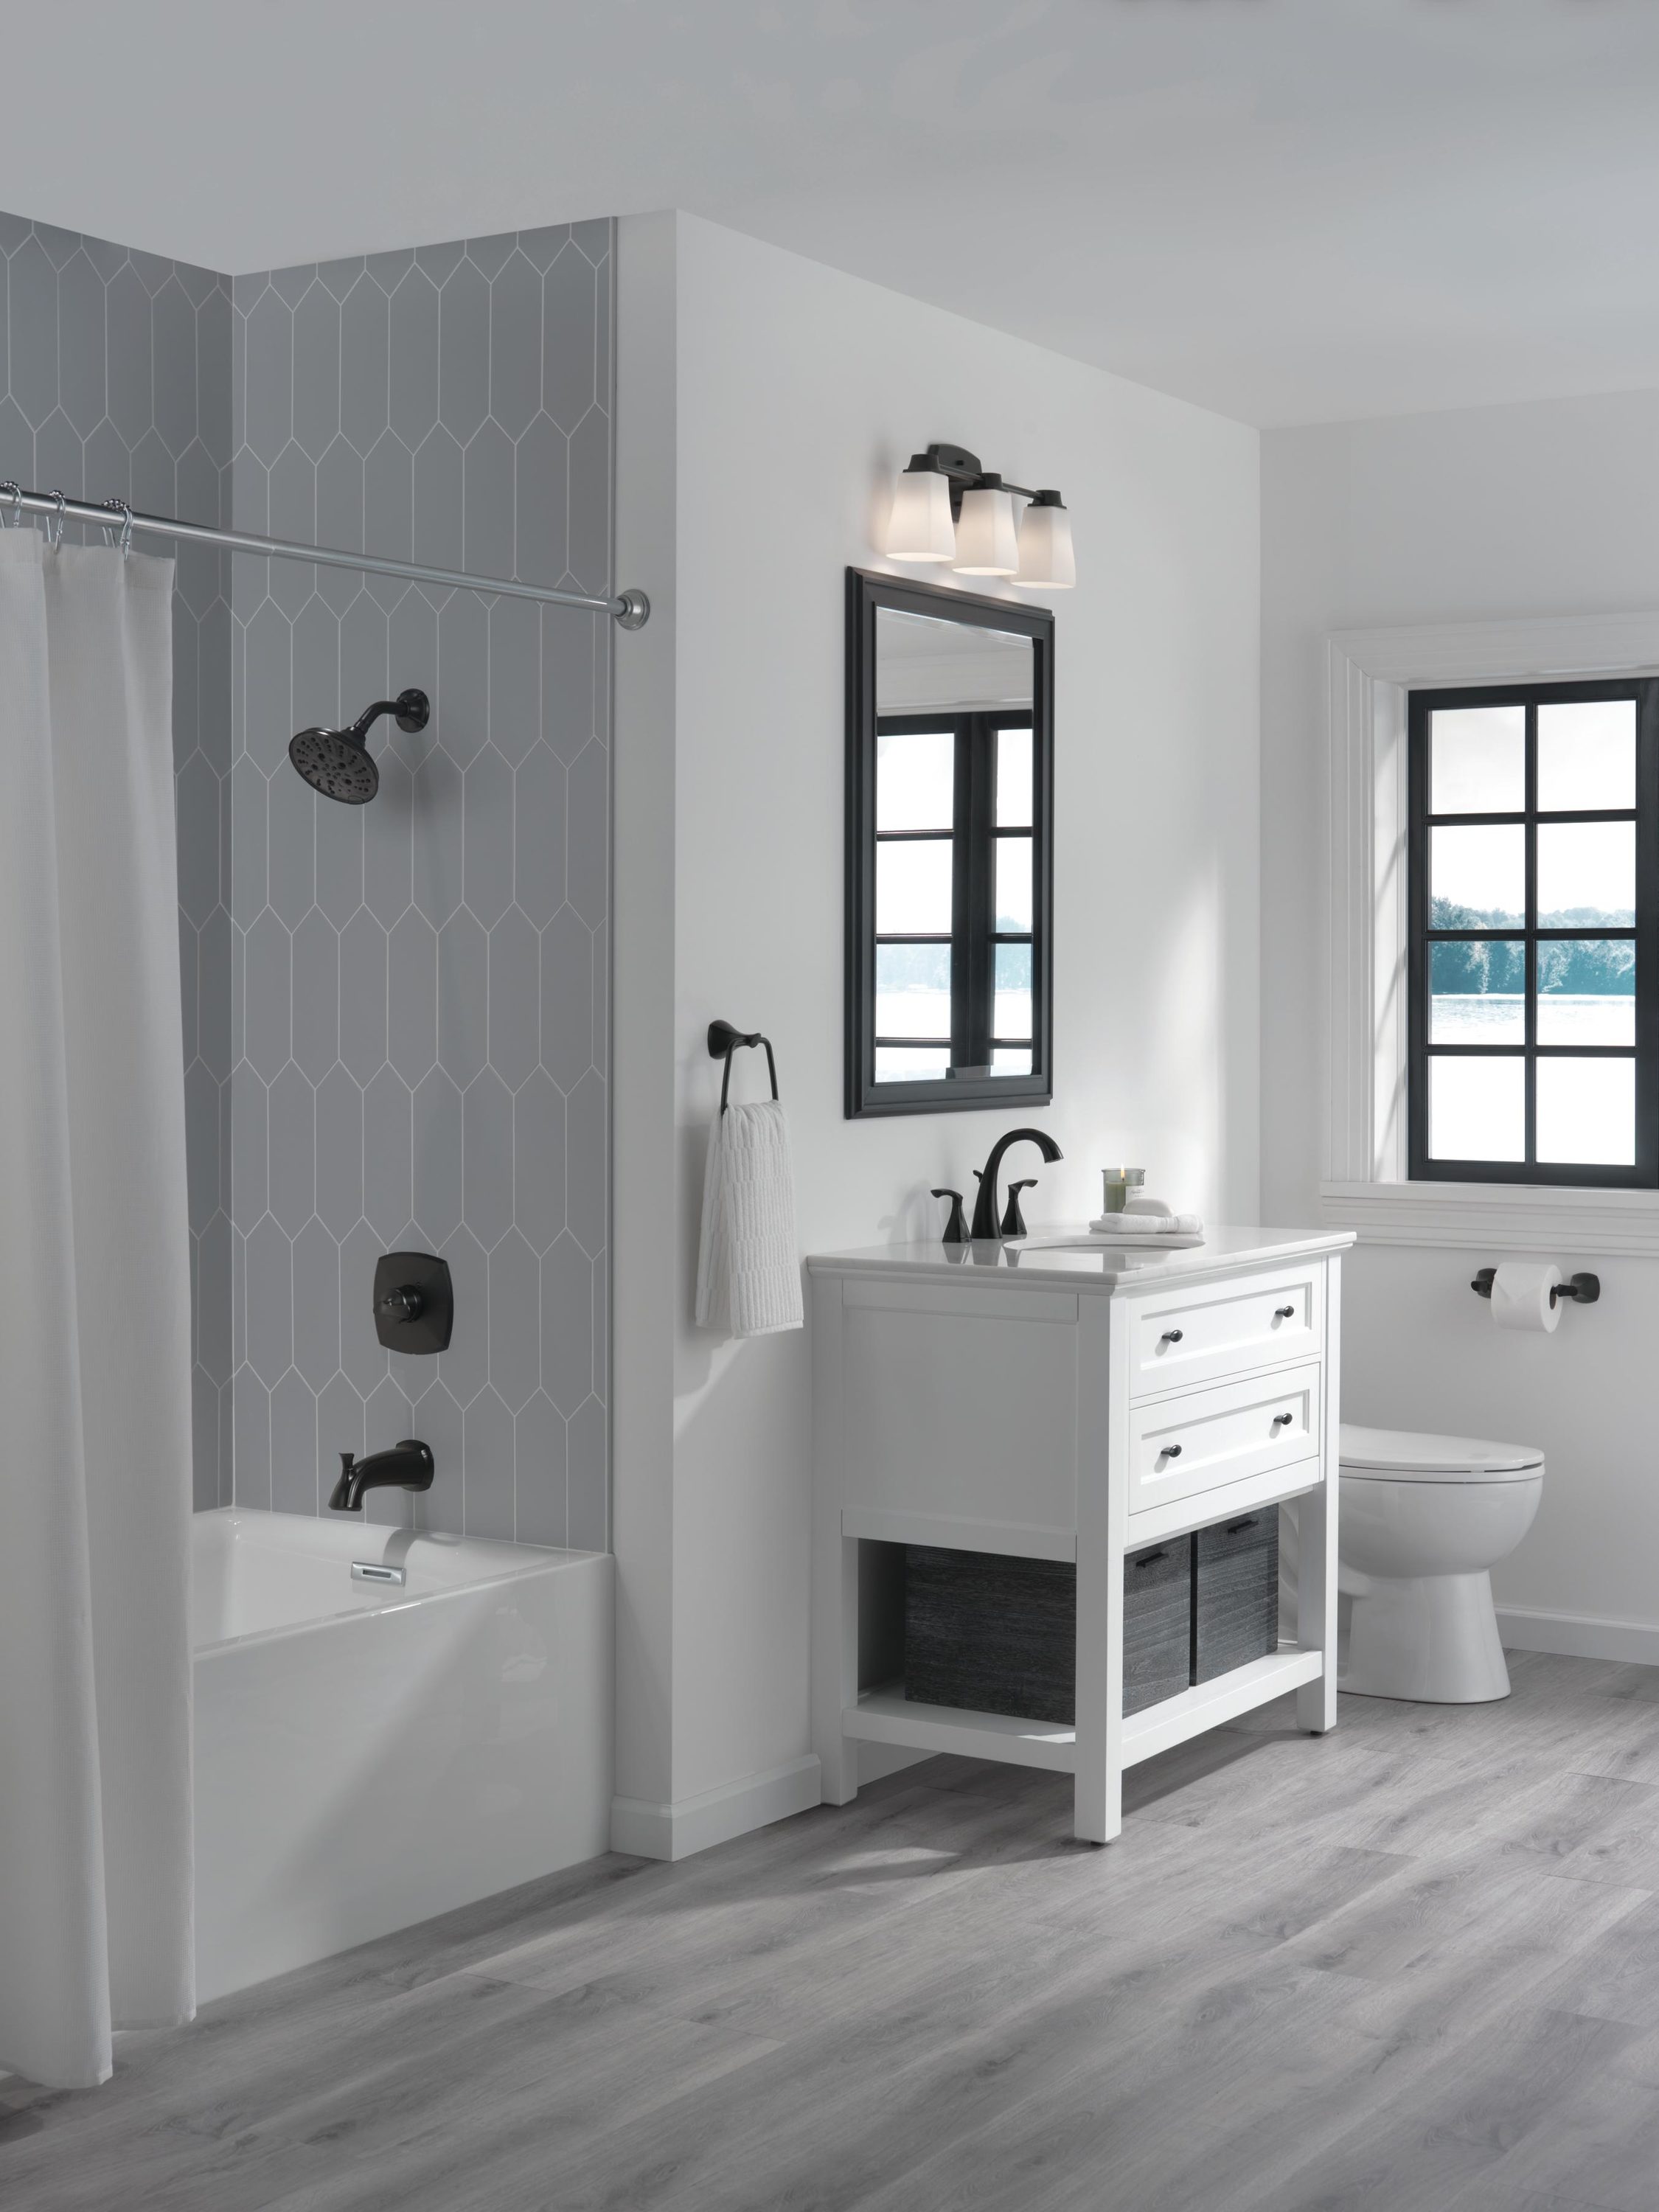 Delta Sandover Matte Black 2-handle Widespread WaterSense High-arc Bathroom Sink Faucet with Drain